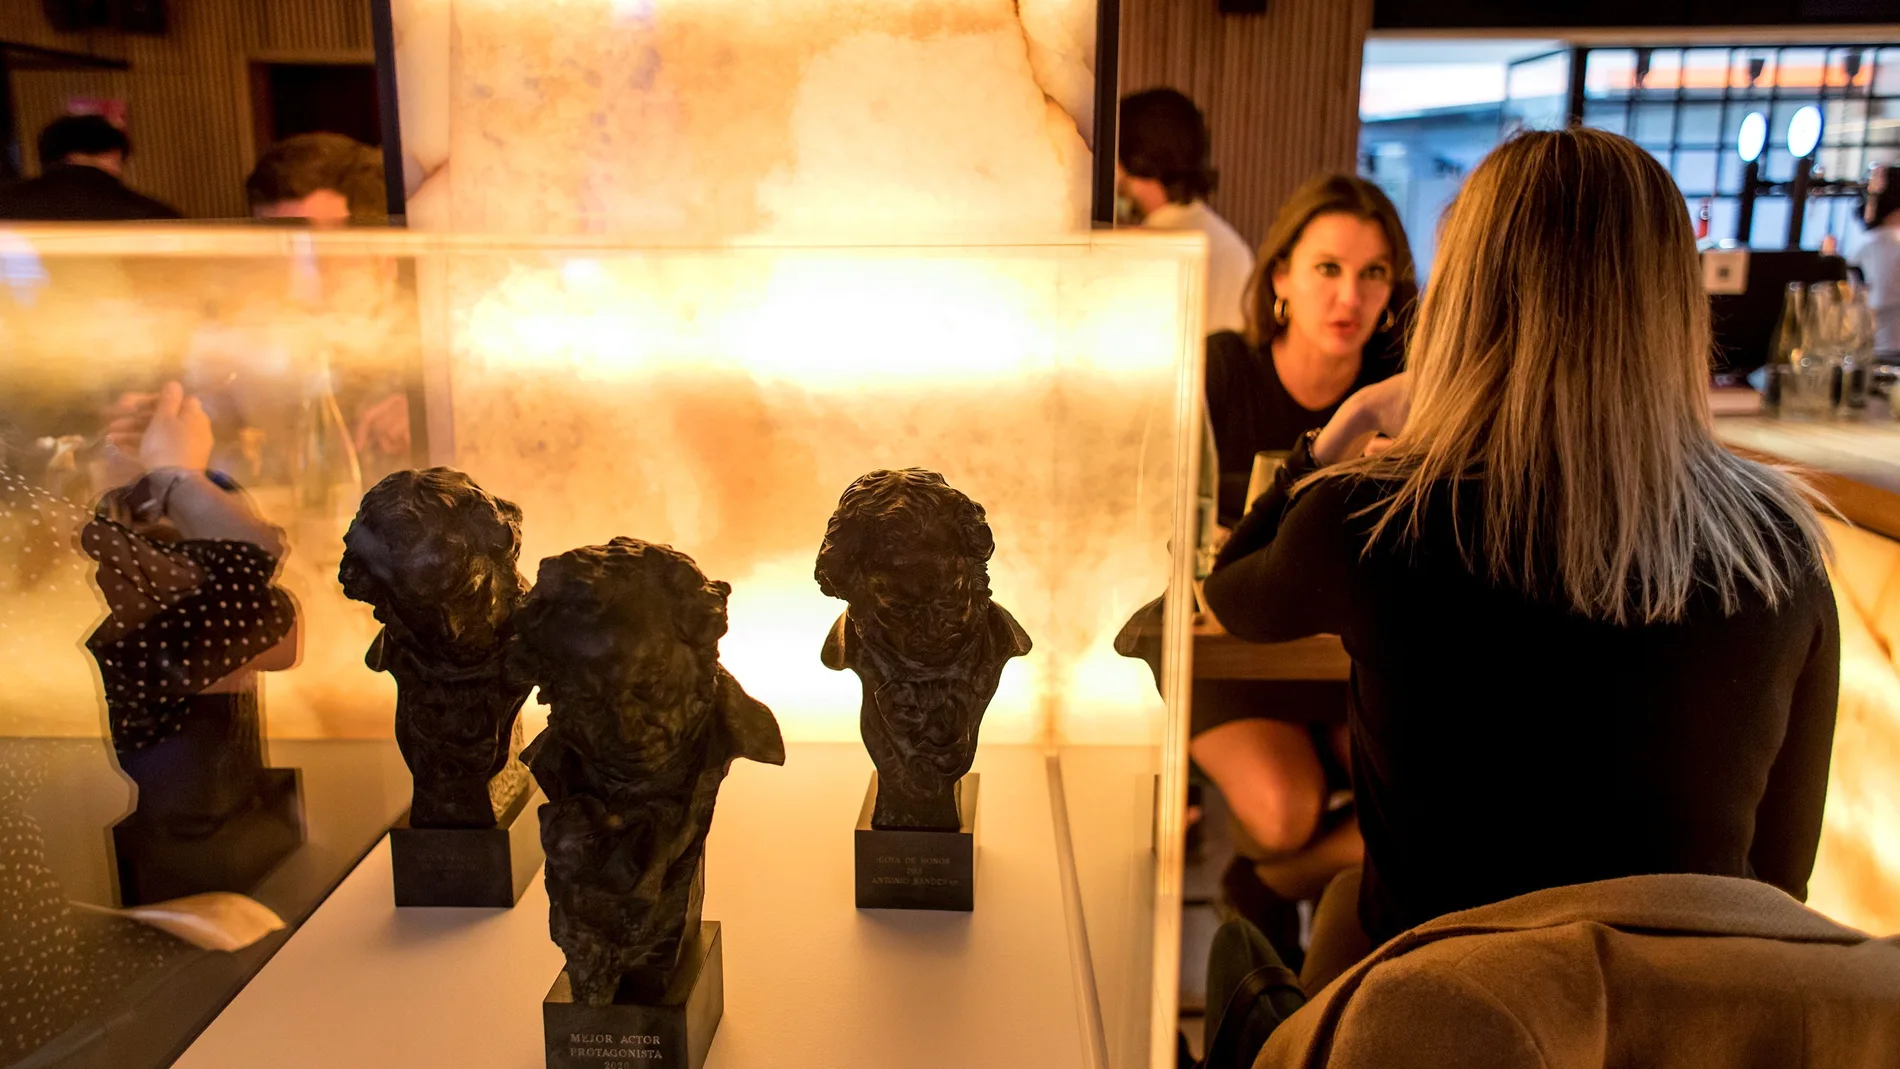 Estatuillas de los Goya ganados por Antonio Banderas expuestas en el restaurante Tercer Acto del Teatro del Soho, propiedad del actor en Málaga, donde se celebrará la gala de entrega de los Premios Goya del cine español